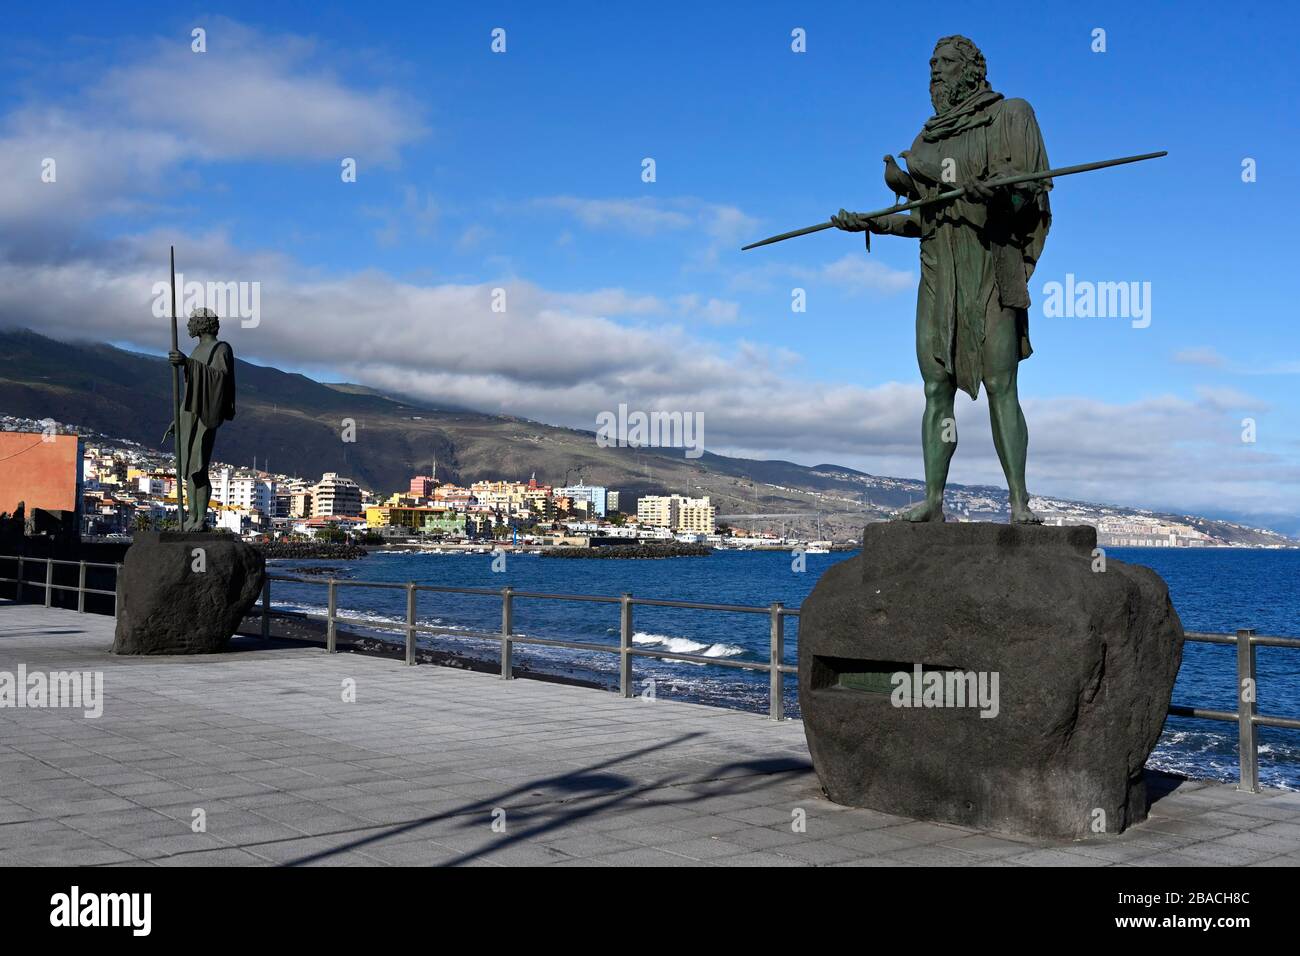 Statue von Anaterve, ehemaliger König von Guimar, Canaria-Platz, Candelaria-Stadt, Tenera-Insel, Kanarische Inseln, Spanien Stockfoto